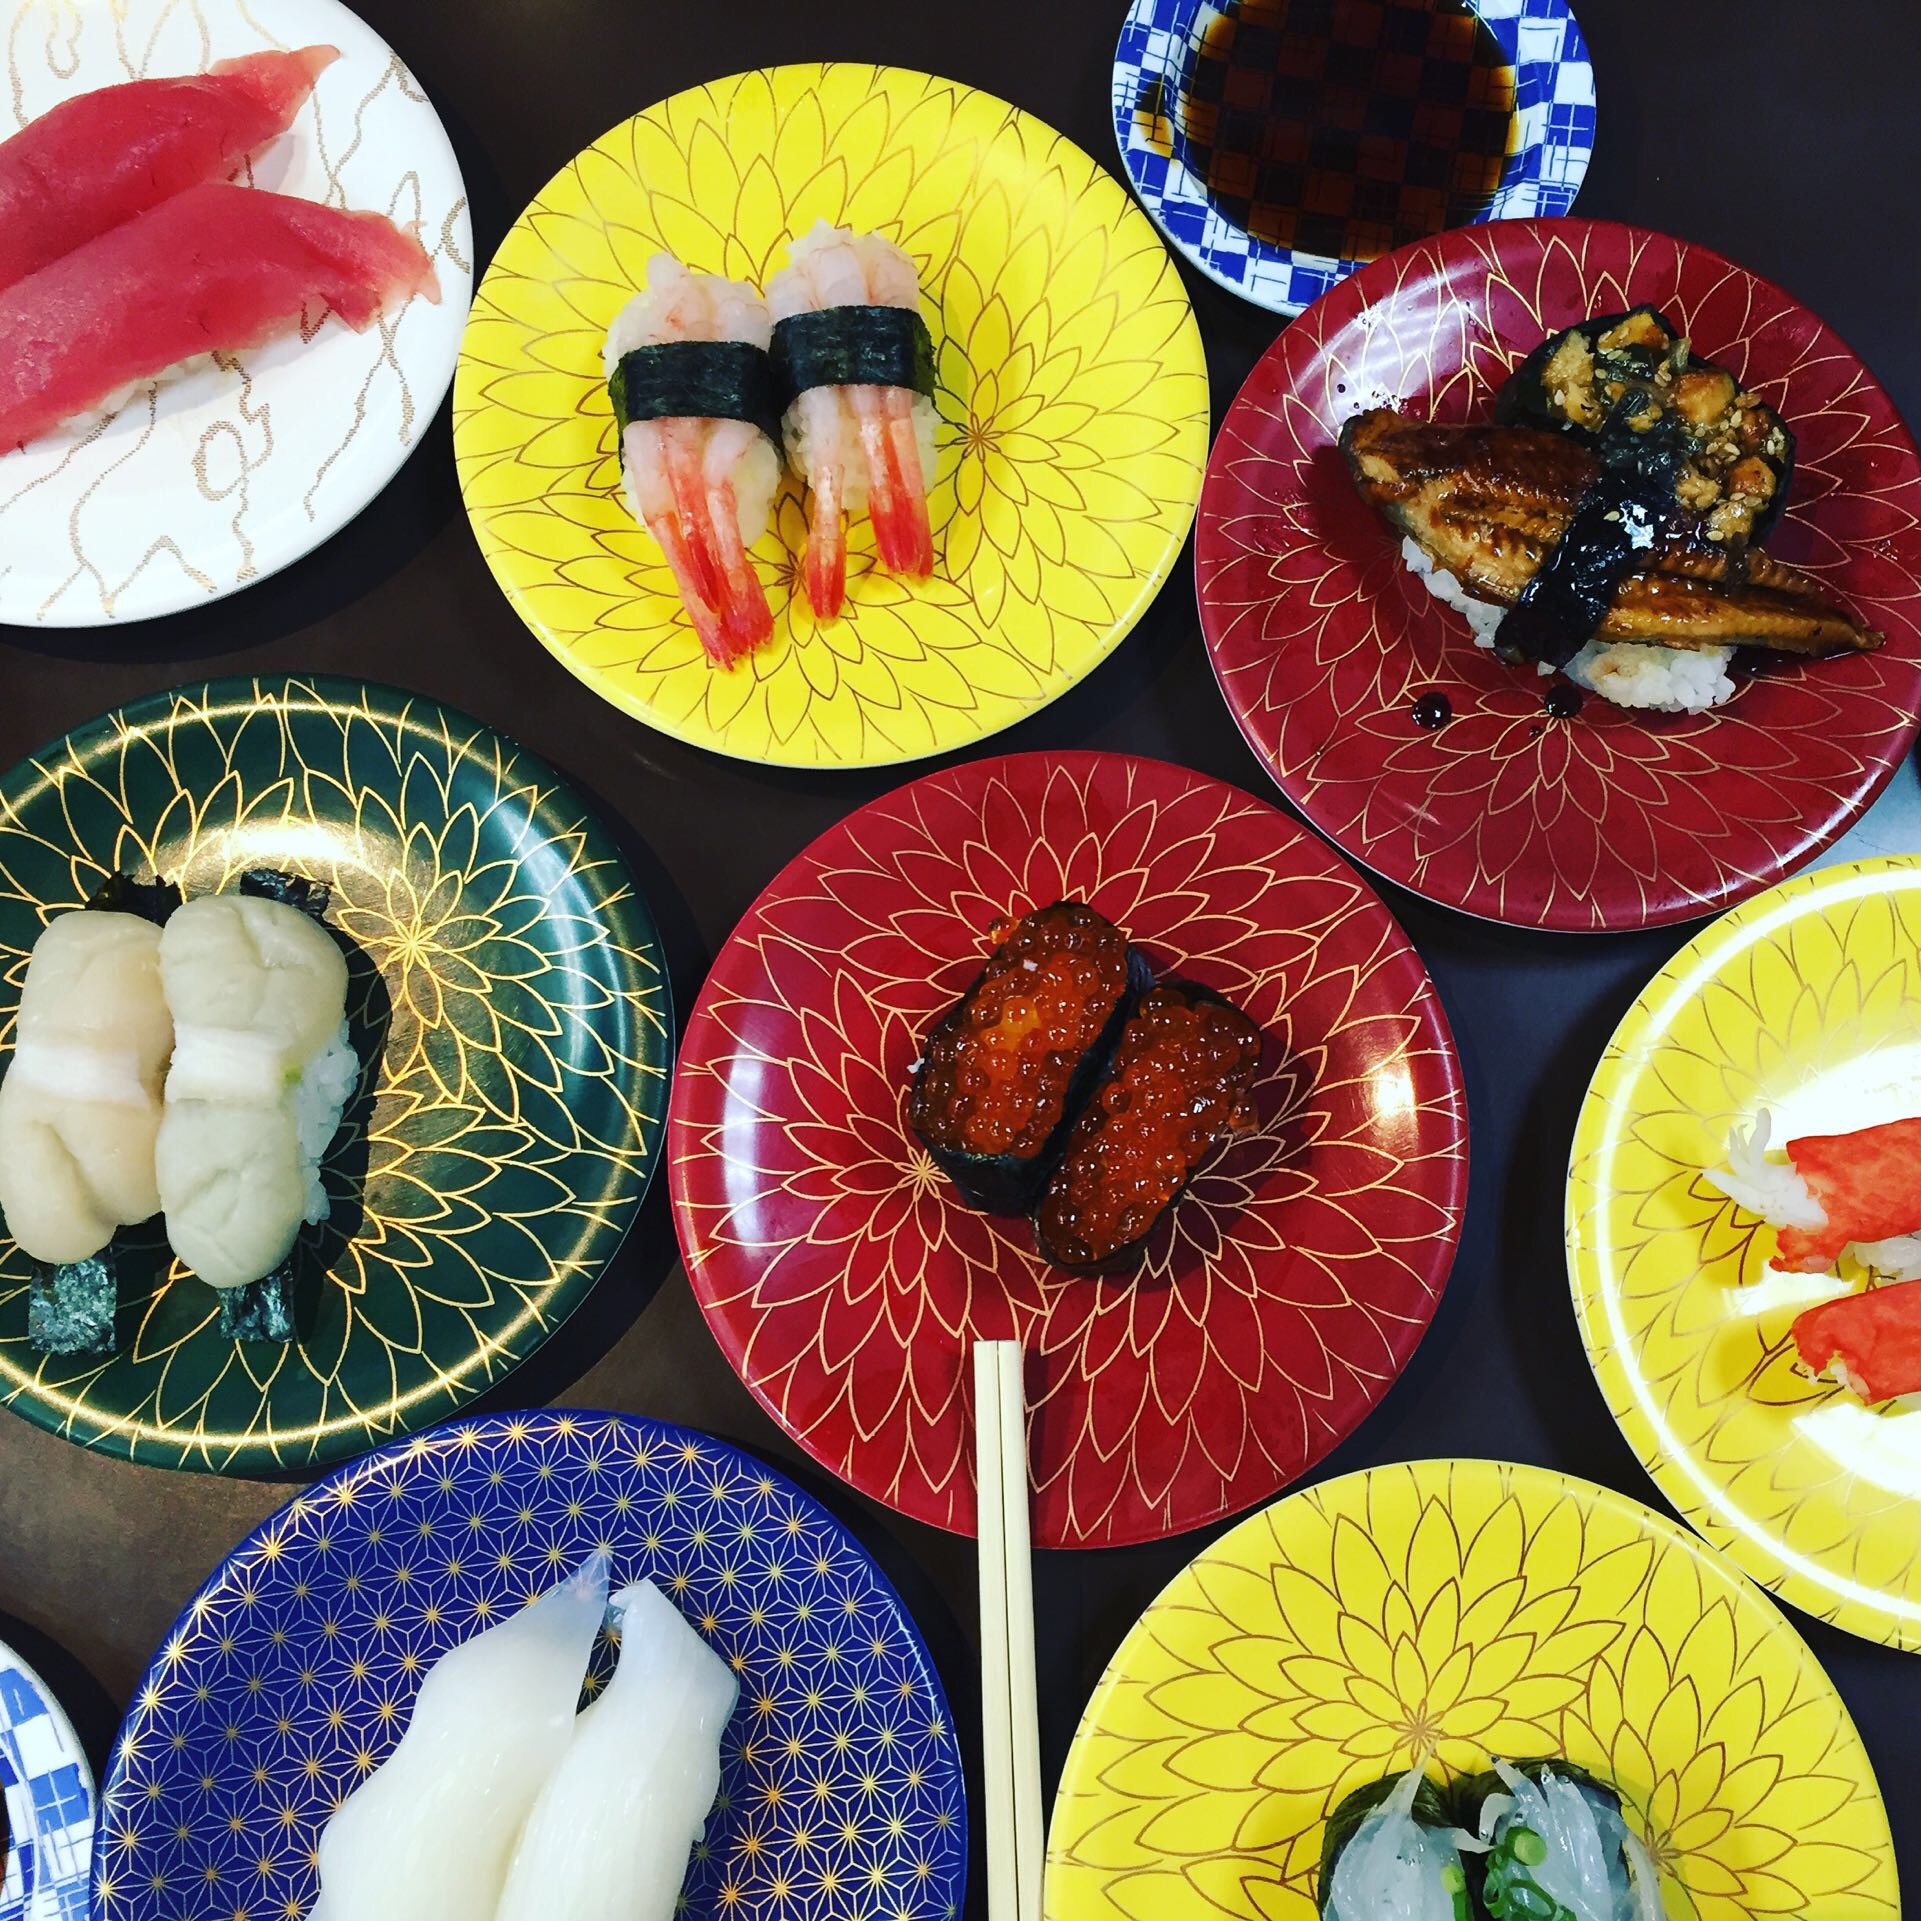 冲绳美国村第一名的回转寿司